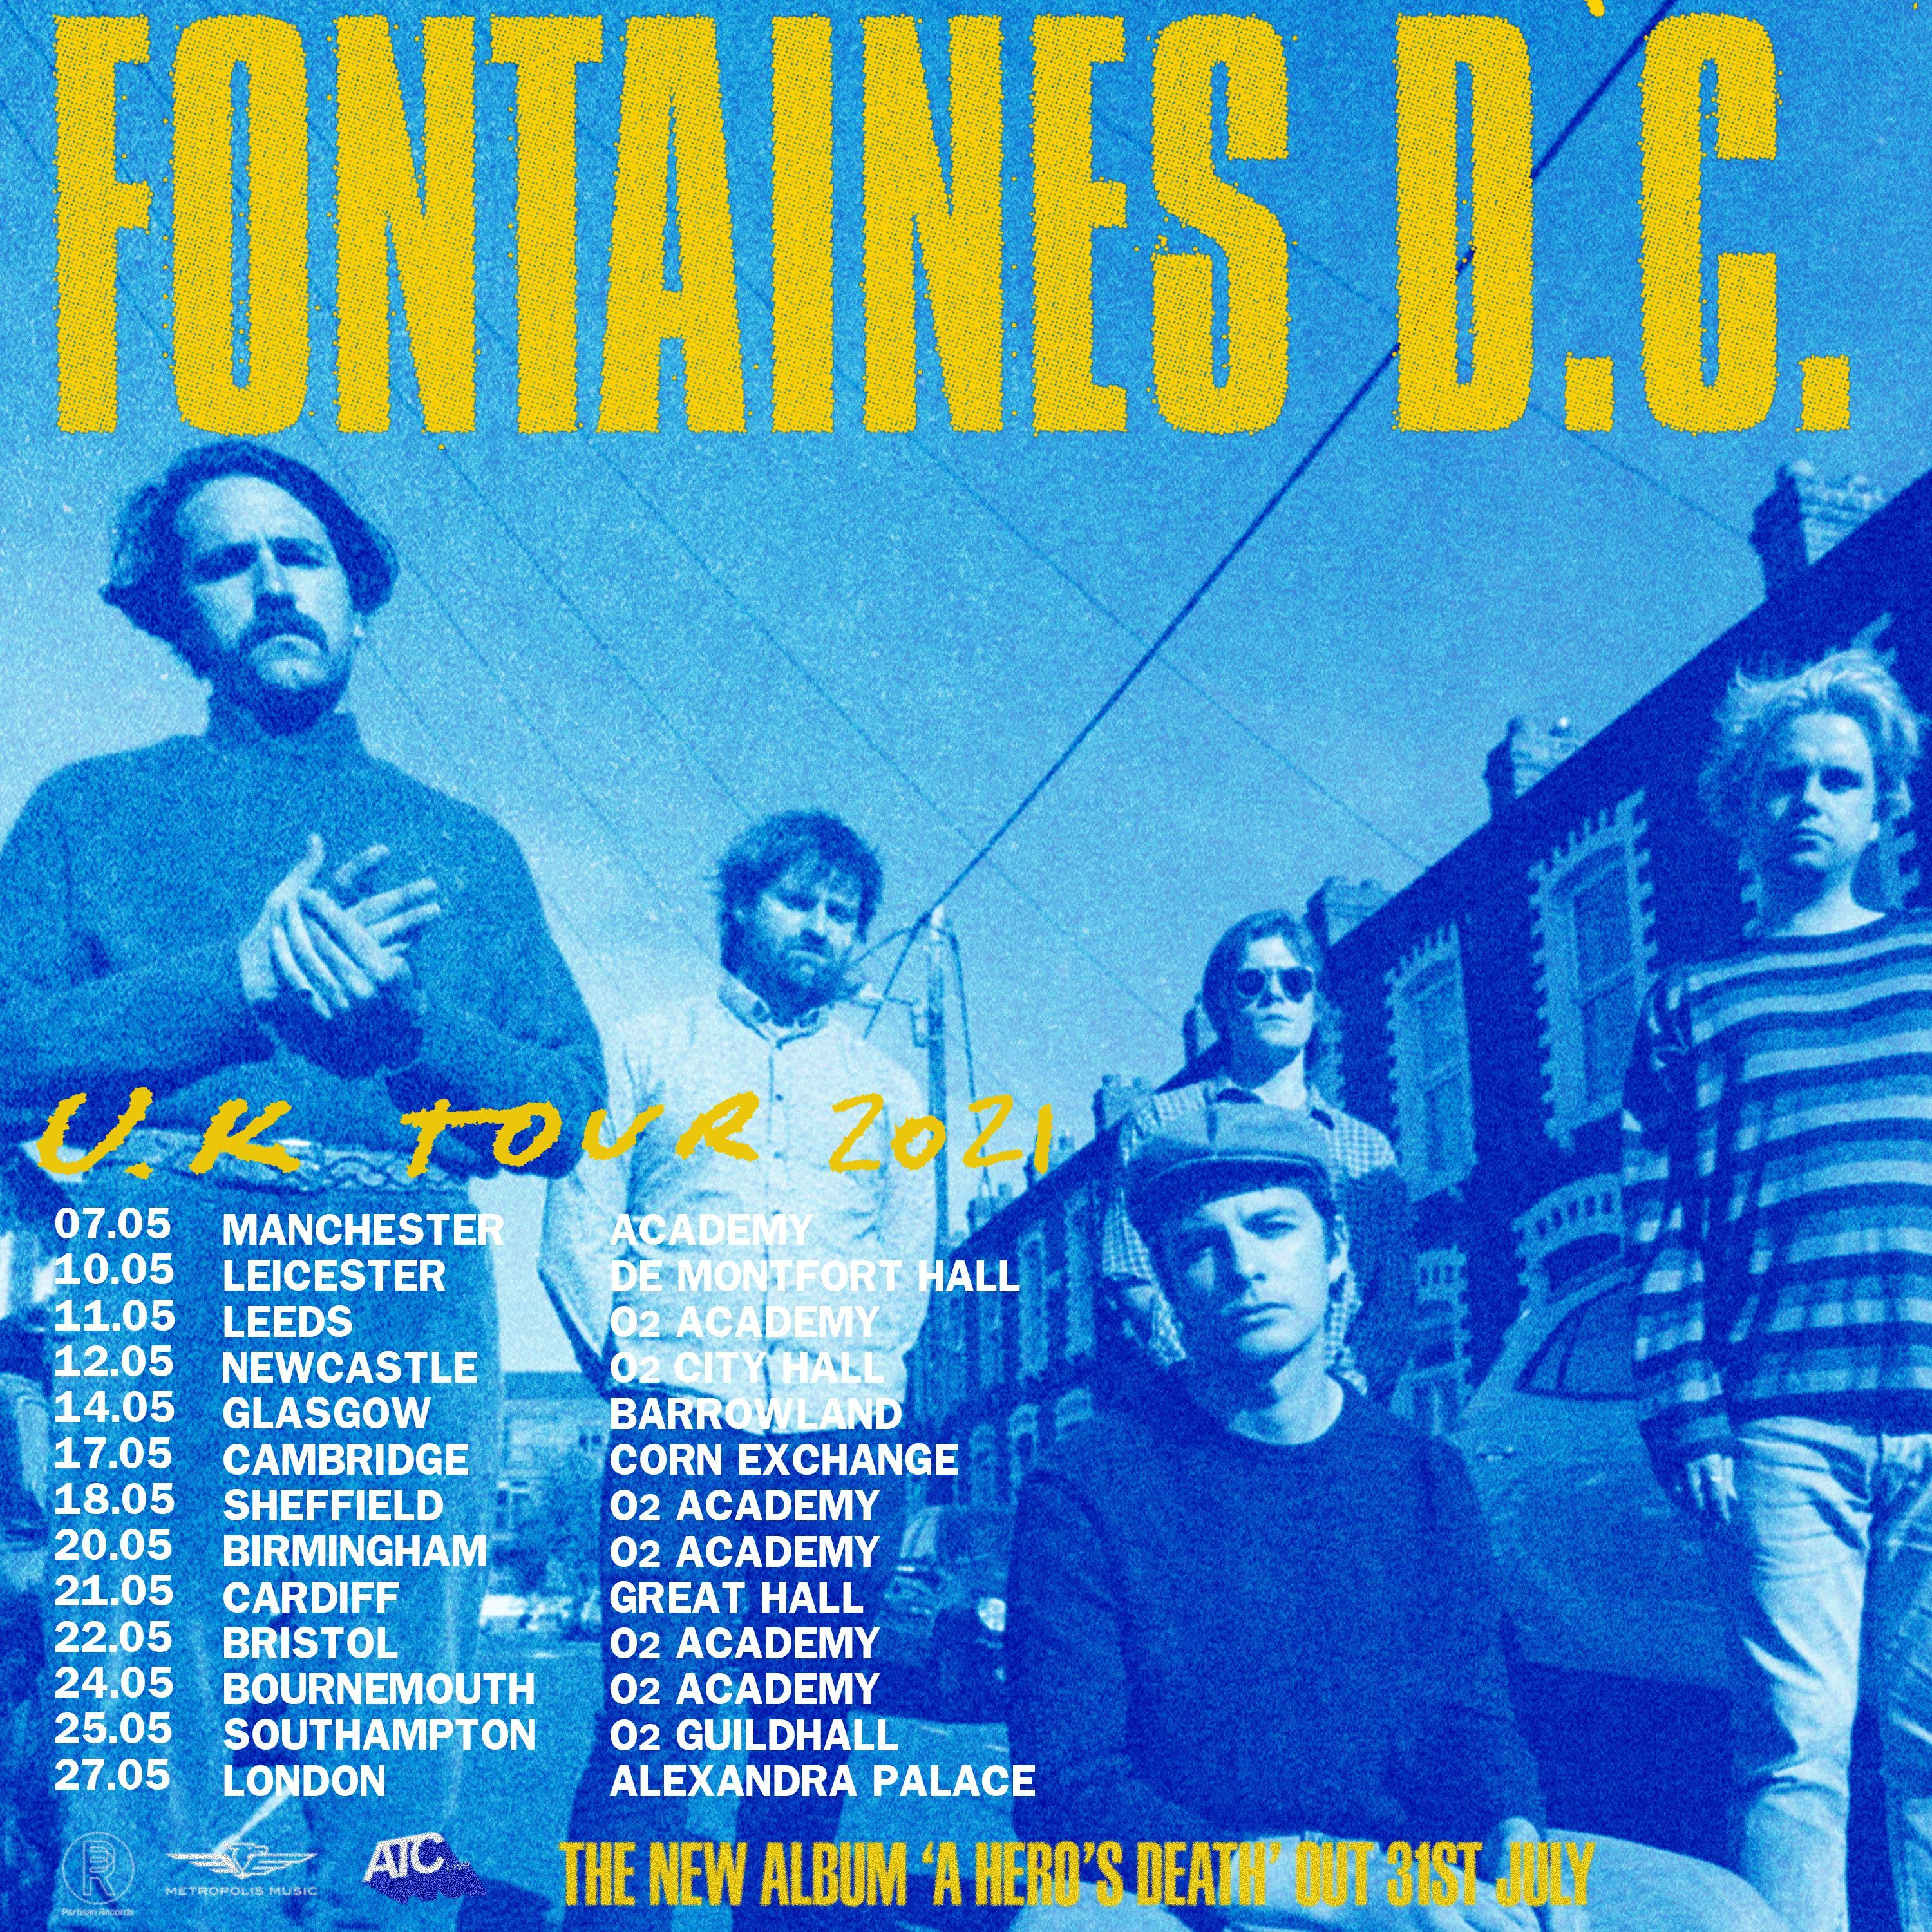 fontaines d.c. tour dates